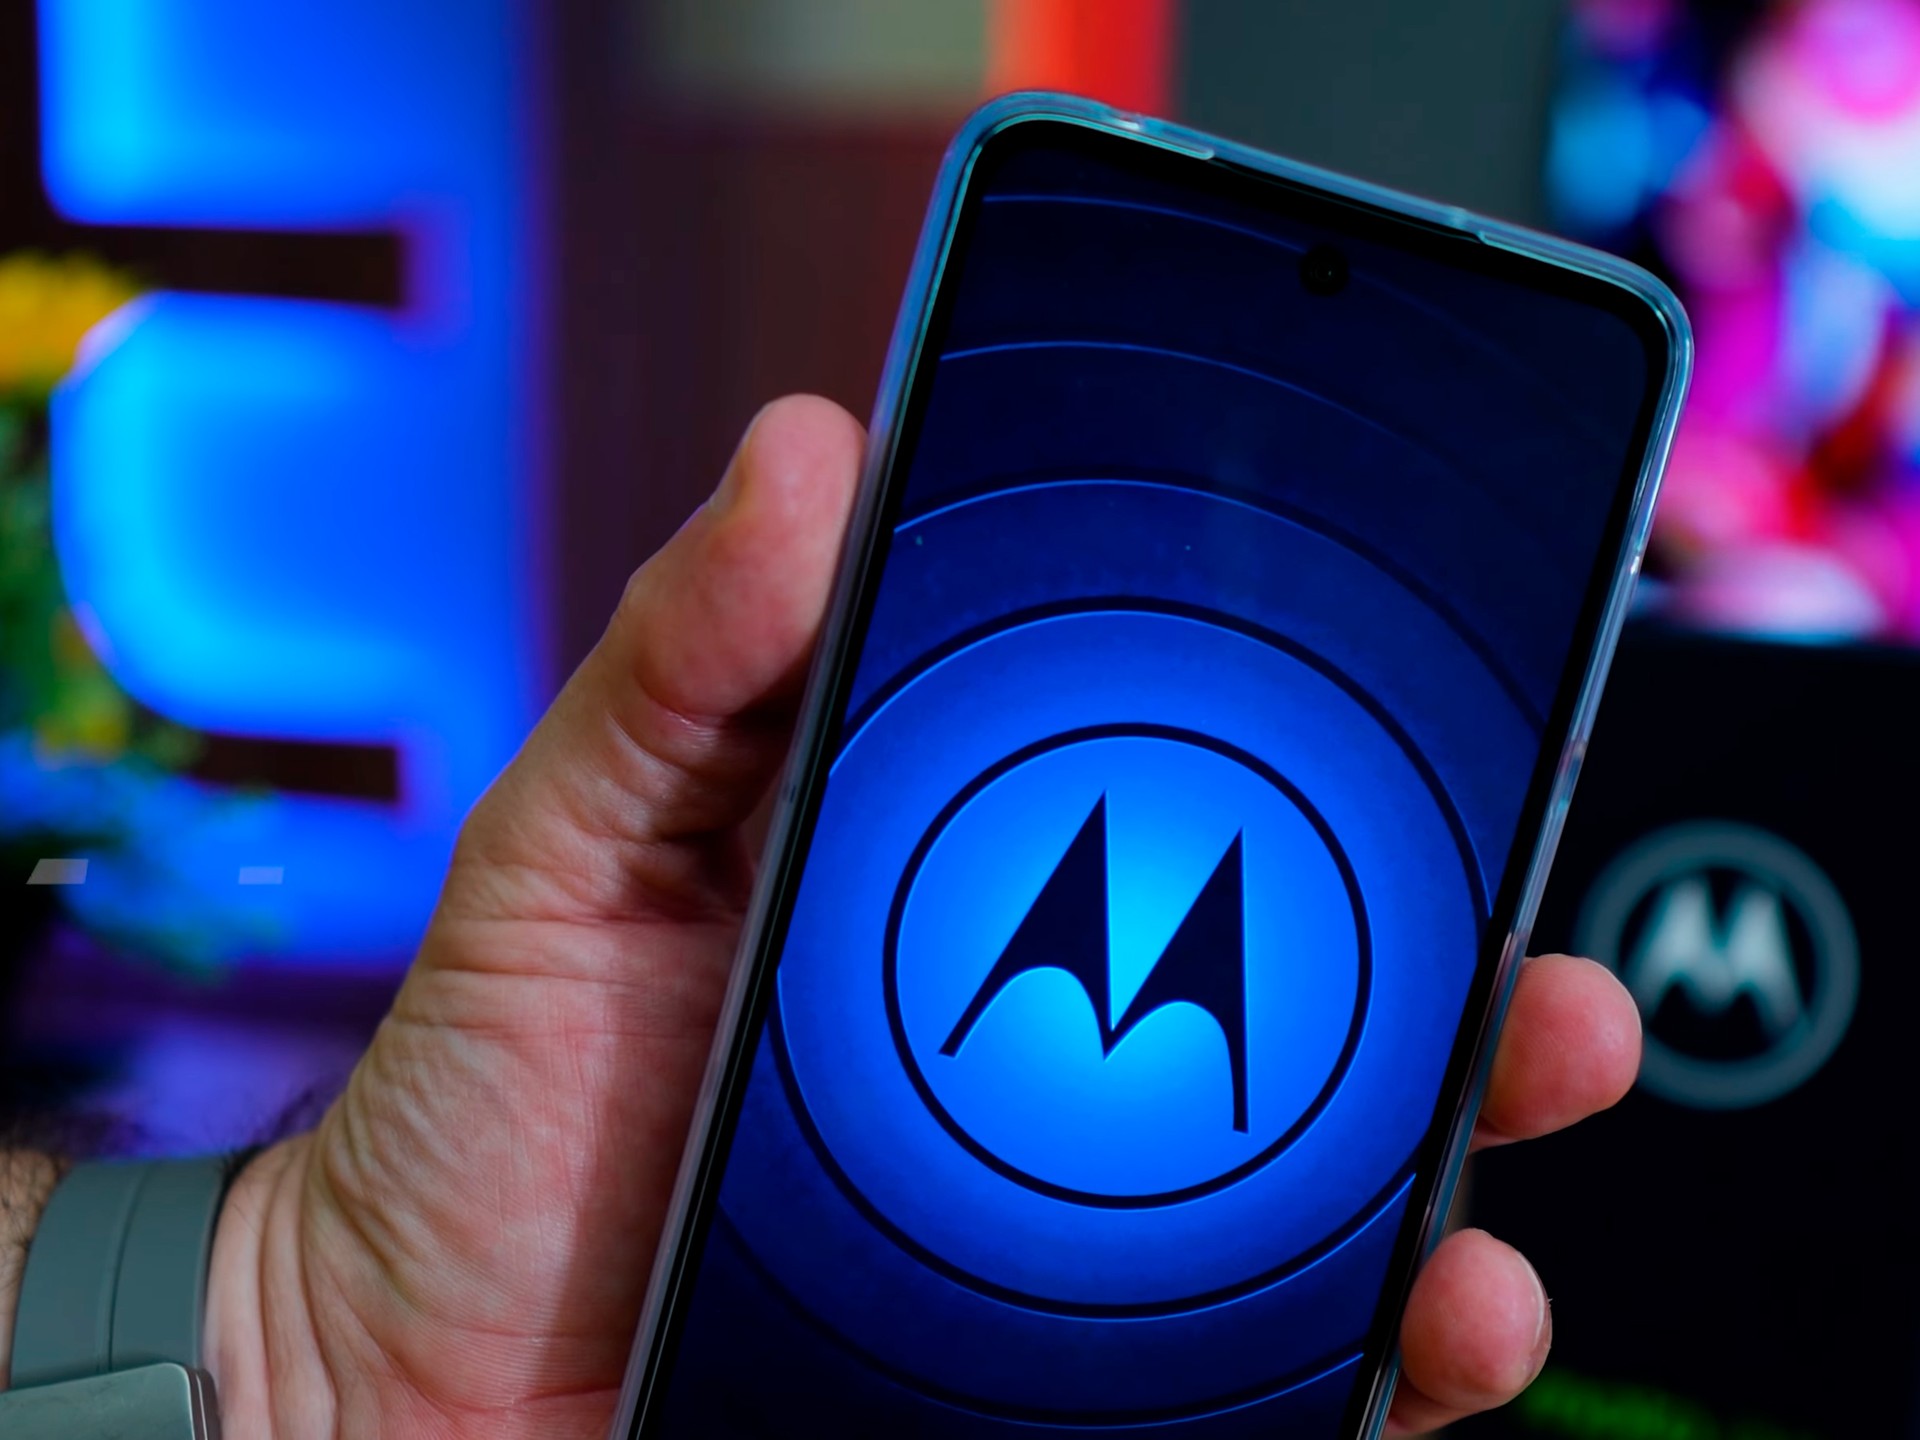 G1 - Moto G: 4ª geração do smartphone conta com 3 aparelhos - notícias em  Tecnologia e Games